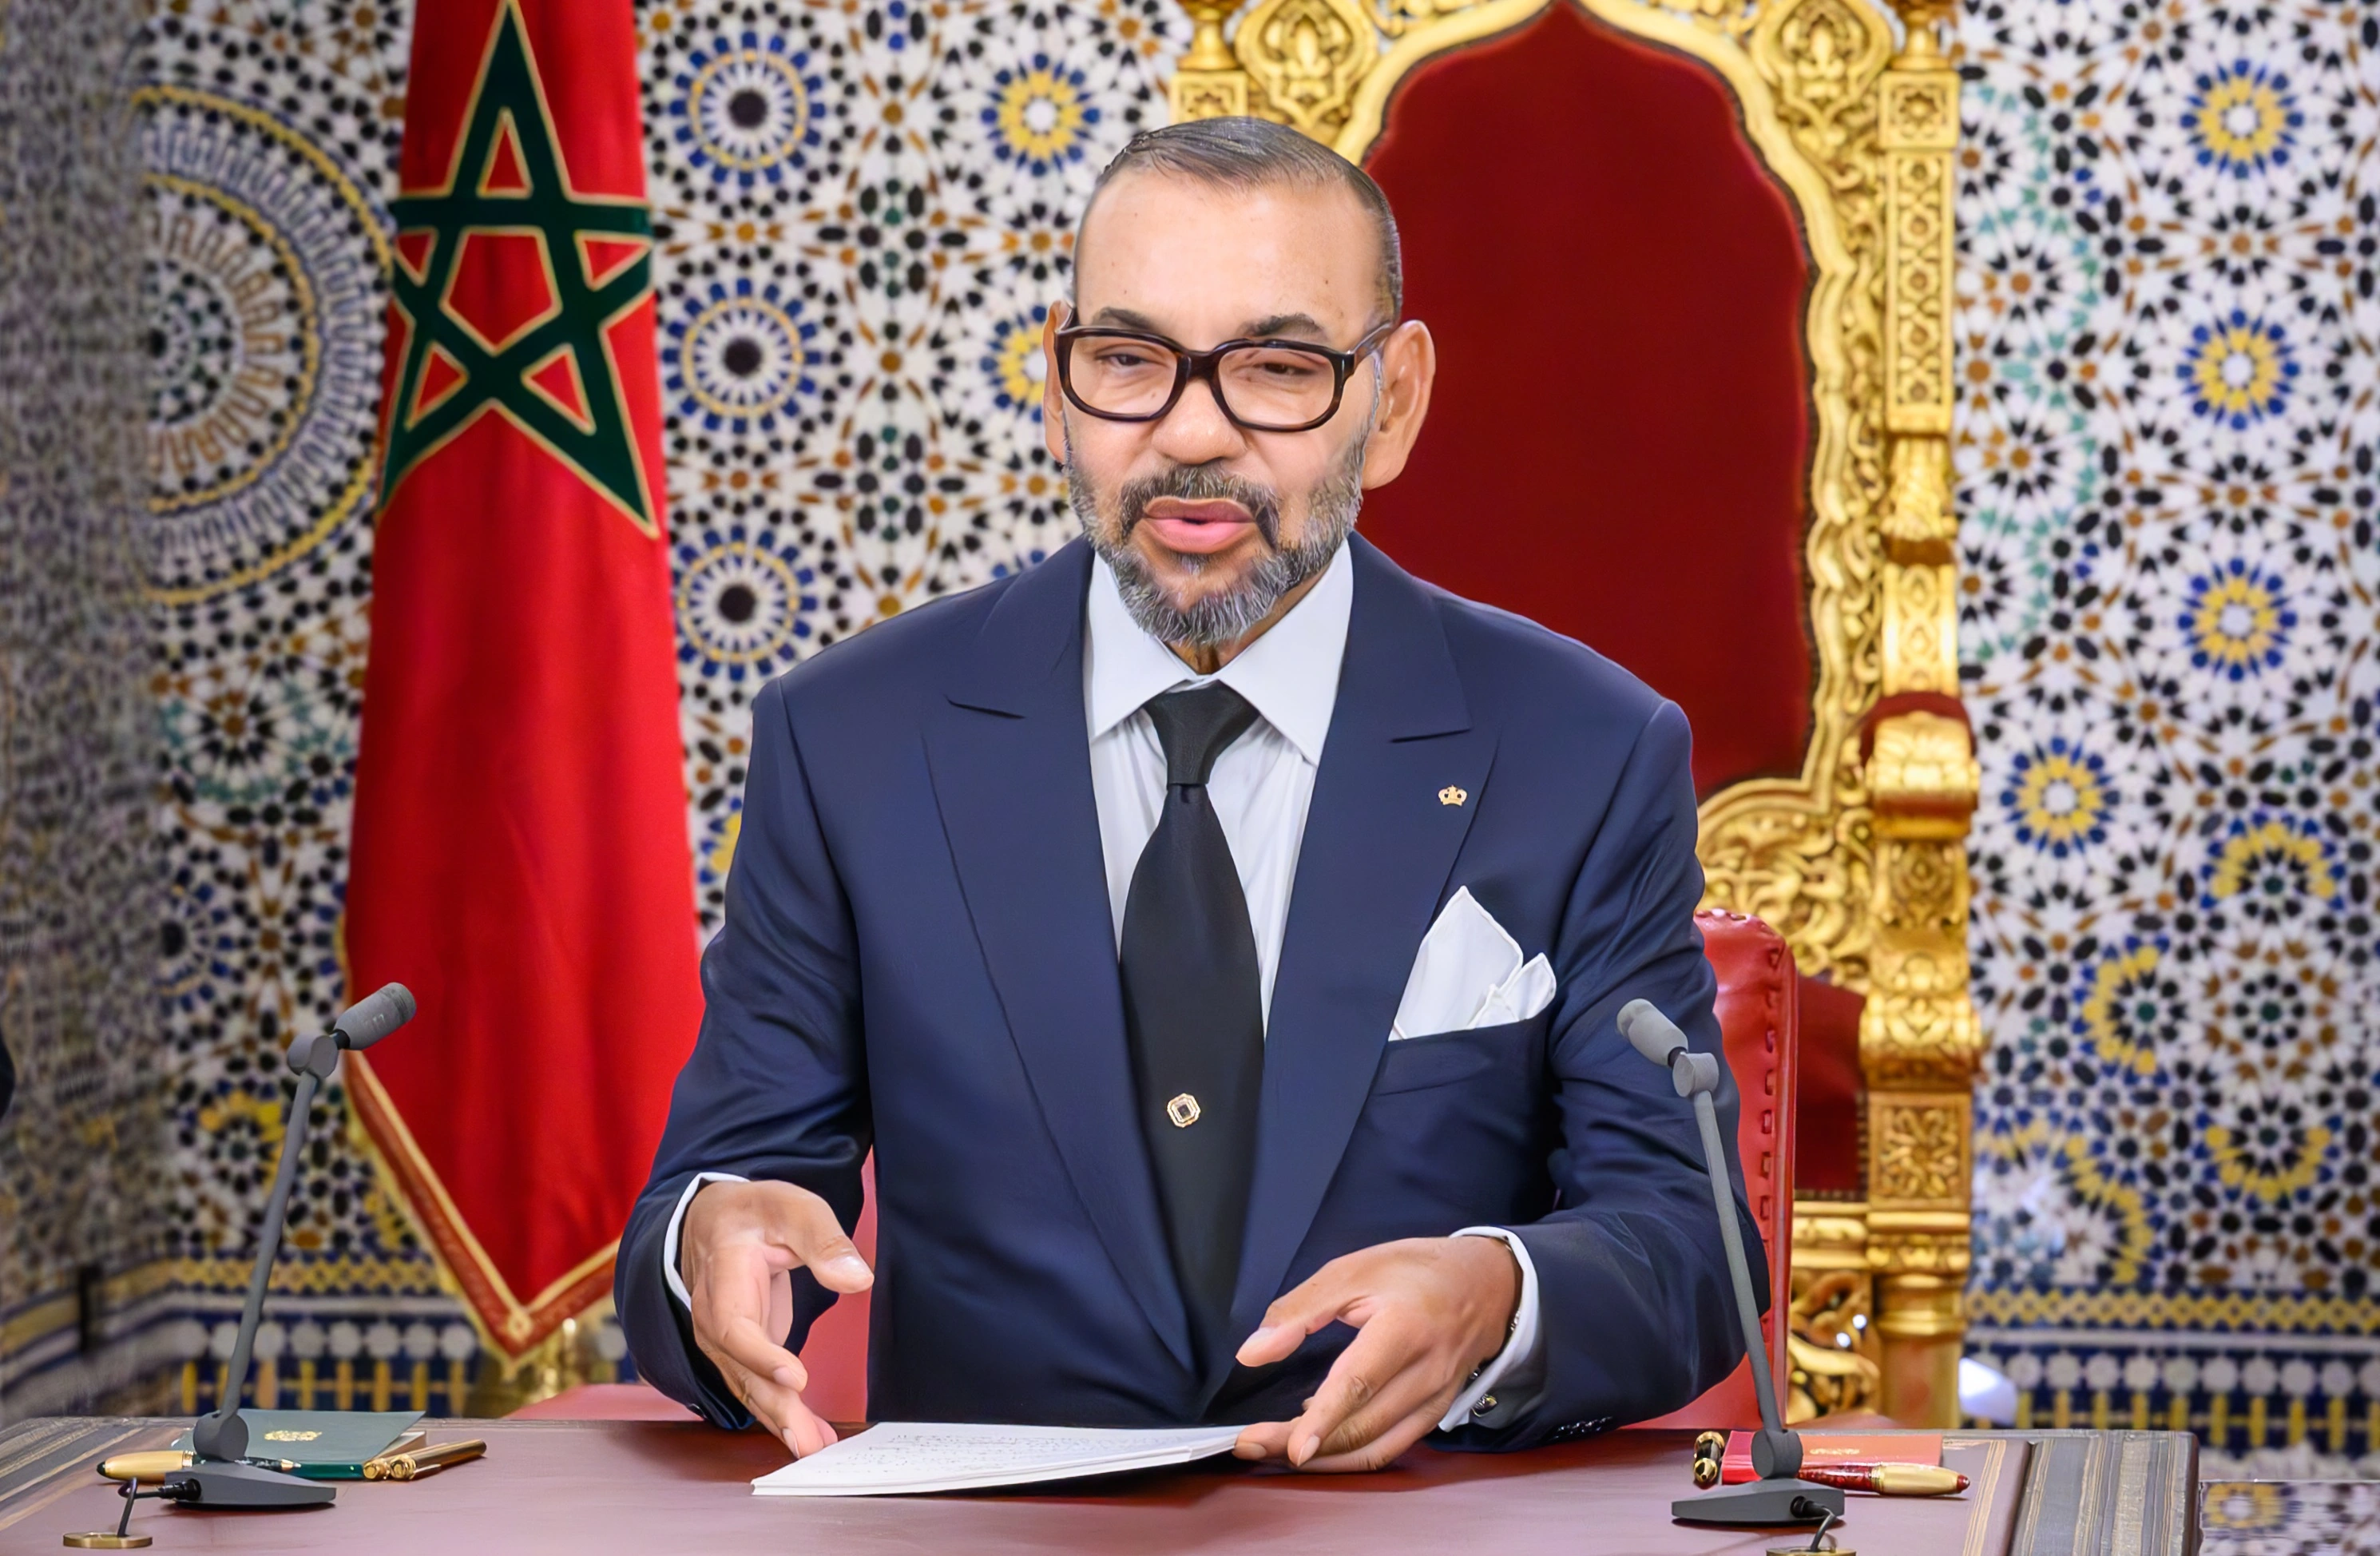 Fête du Trône : Voici le discours intégral de S.M. Le Roi Mohammed VI